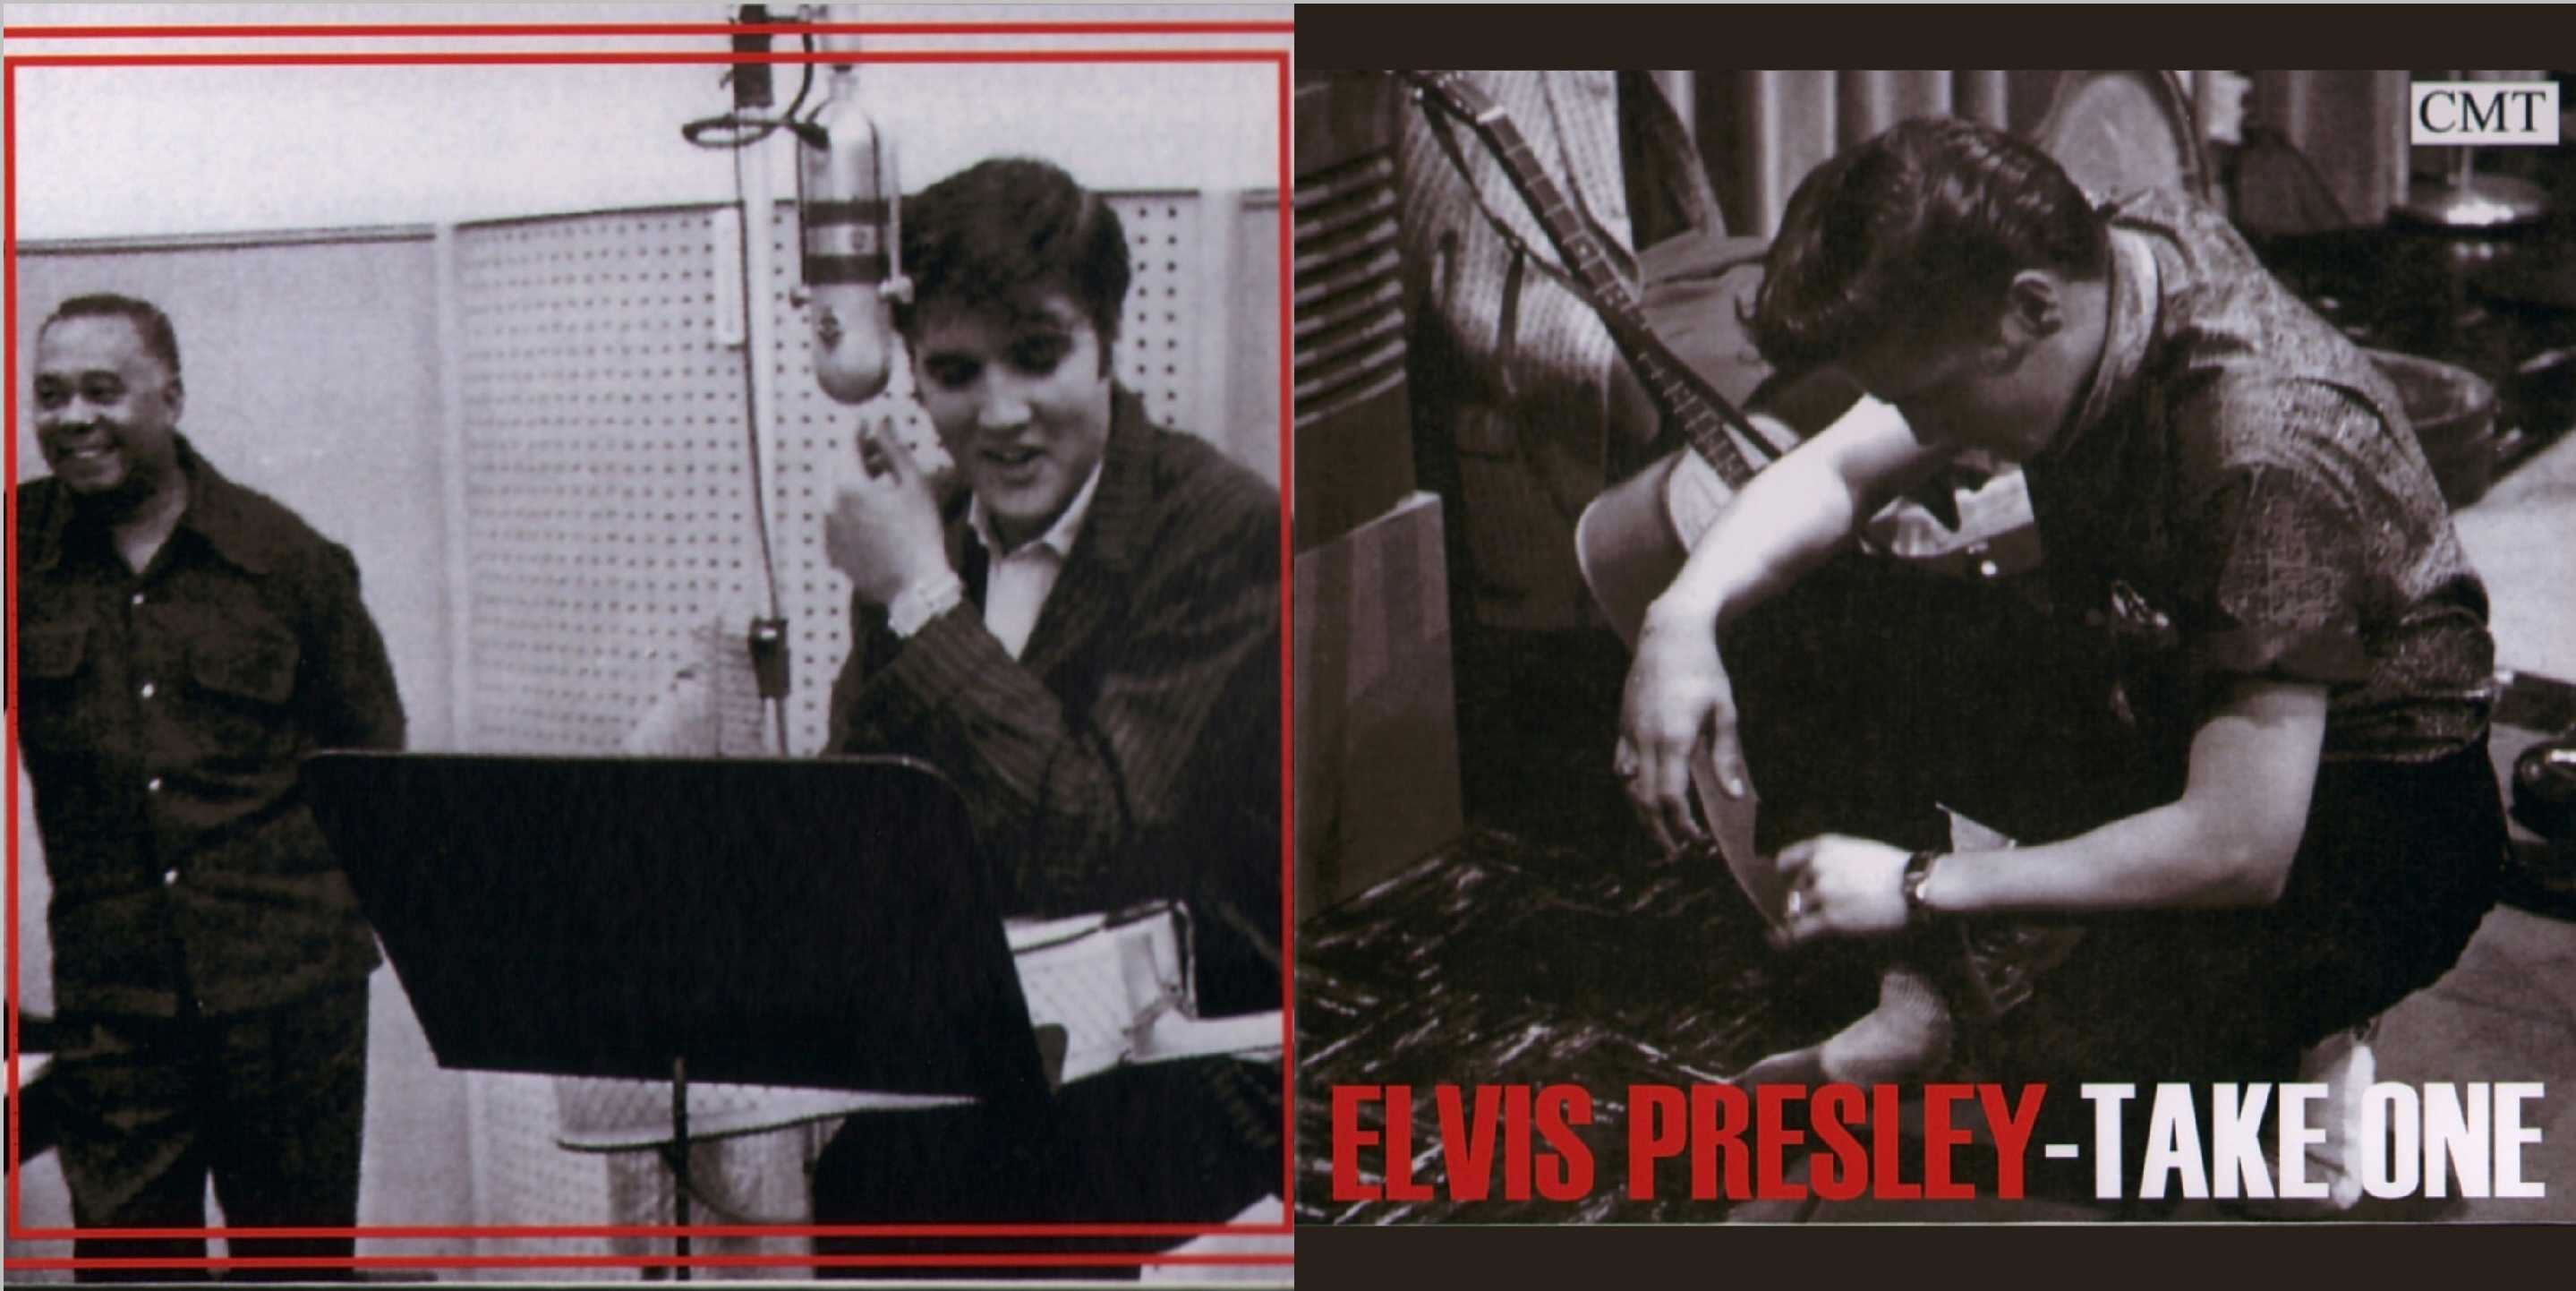 Elvis Presley - Take One, Vol. 7 (E) [CMT]